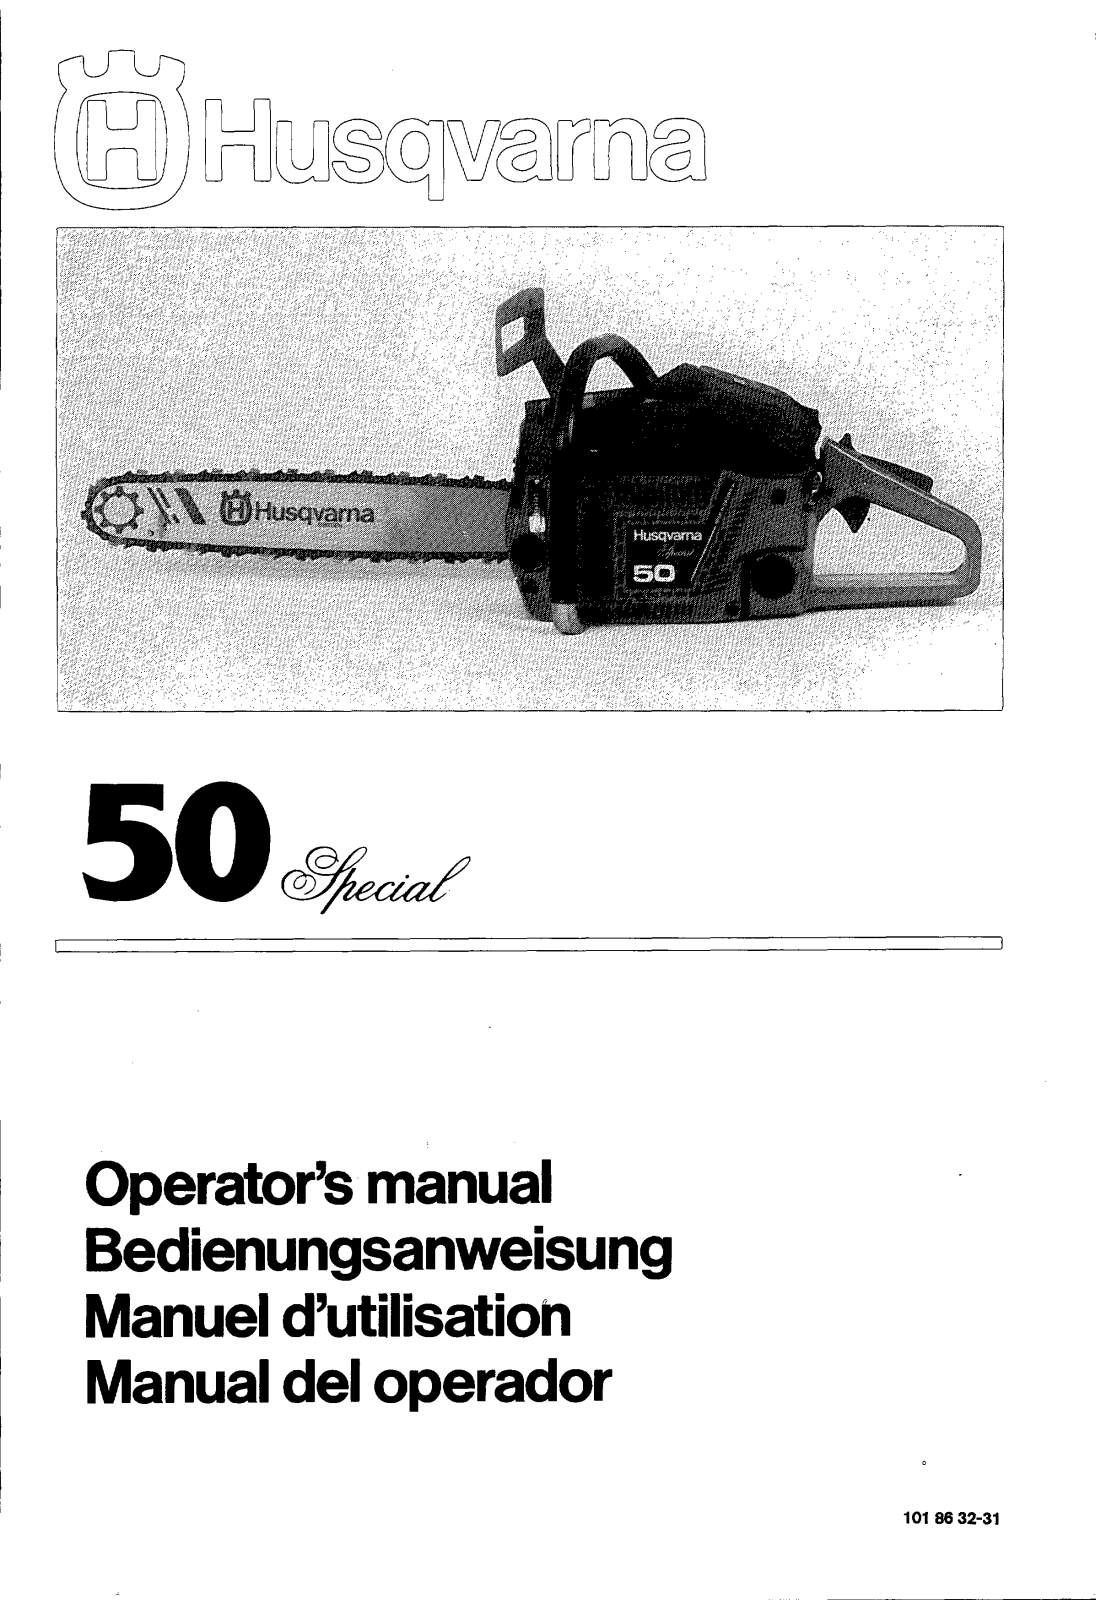 Husqvarna 50 Special User Manual